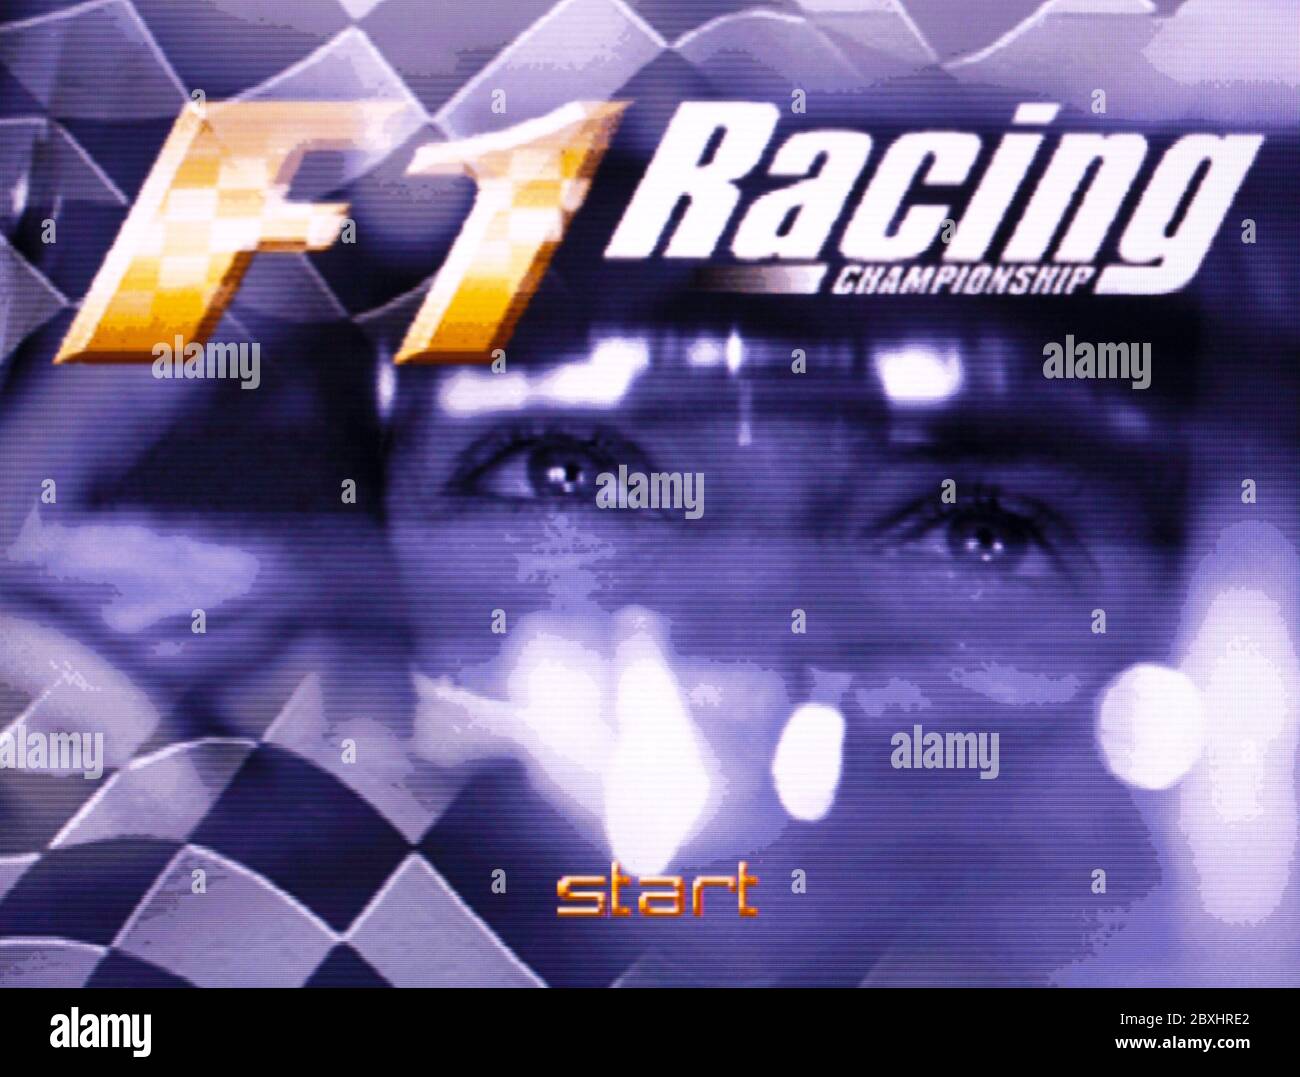 F1 Racing Championship - Nintendo 64 Videospiel - nur für redaktionelle Verwendung Stockfoto